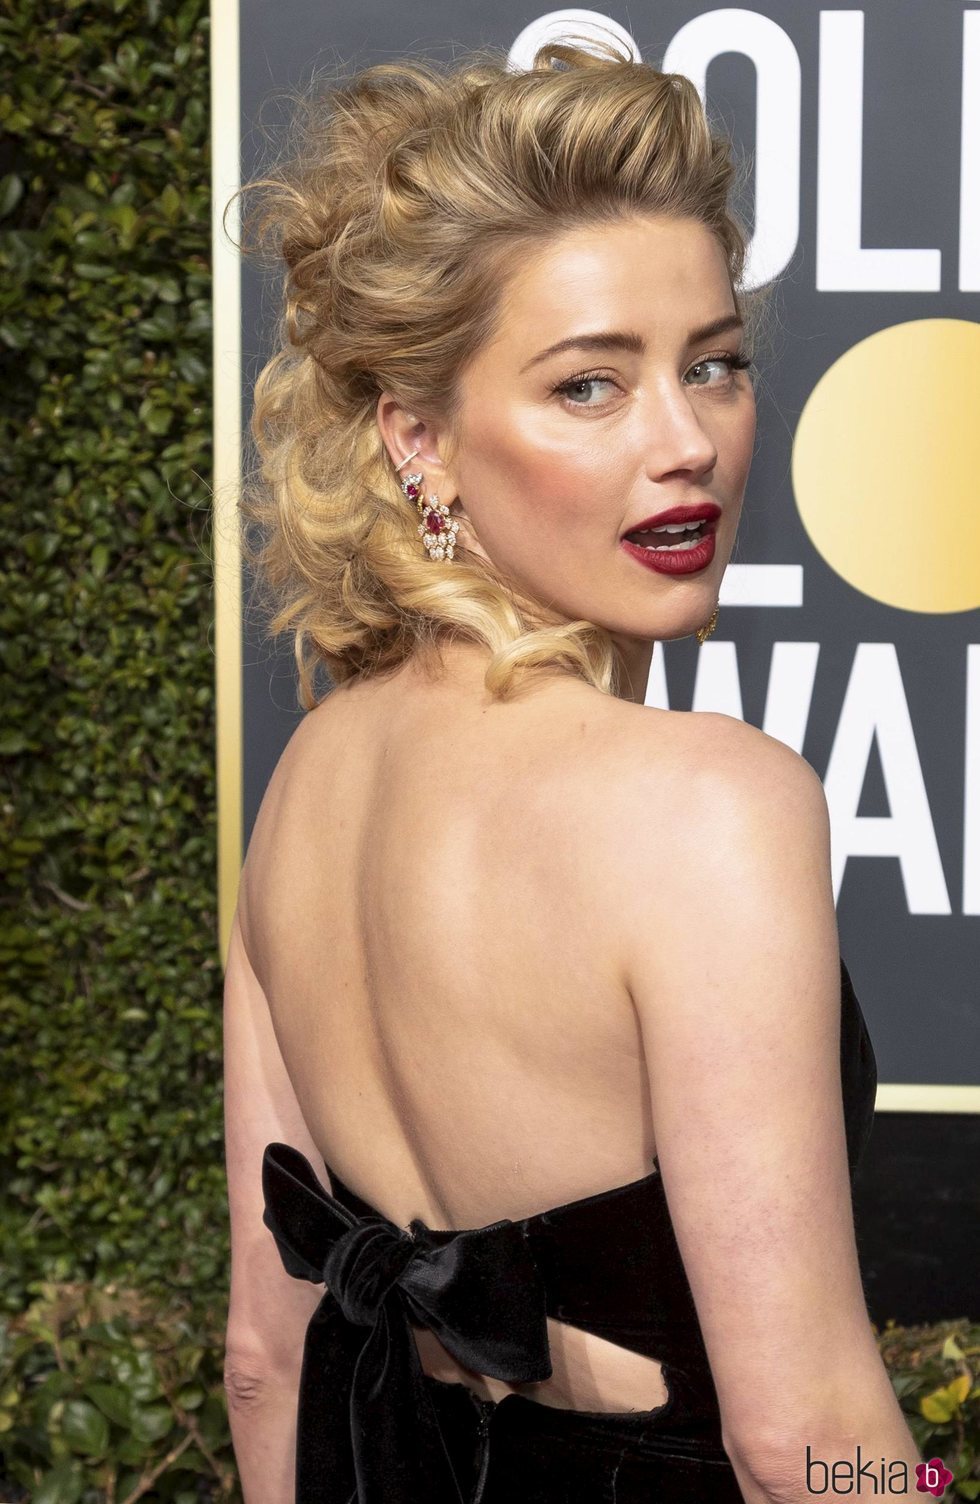 El peinado ochentero de Amber Heard en los Globos de Oro 2019